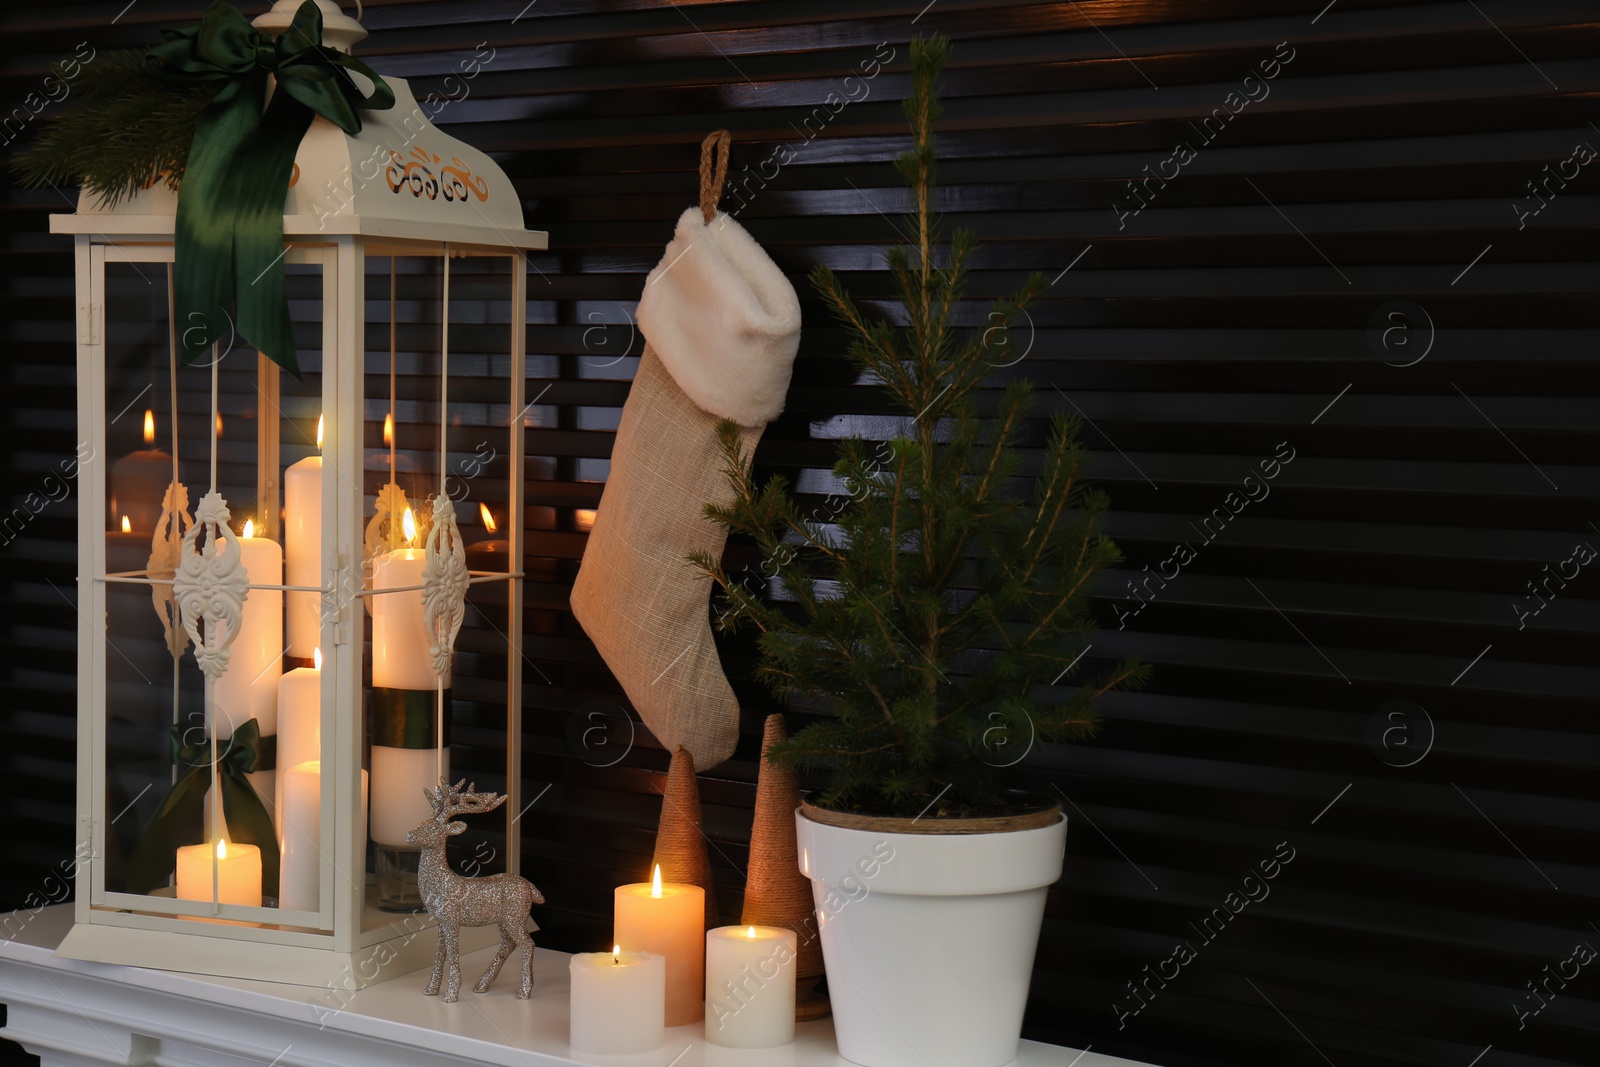 Photo of Decorative lantern and Christmas decor on shelf indoors